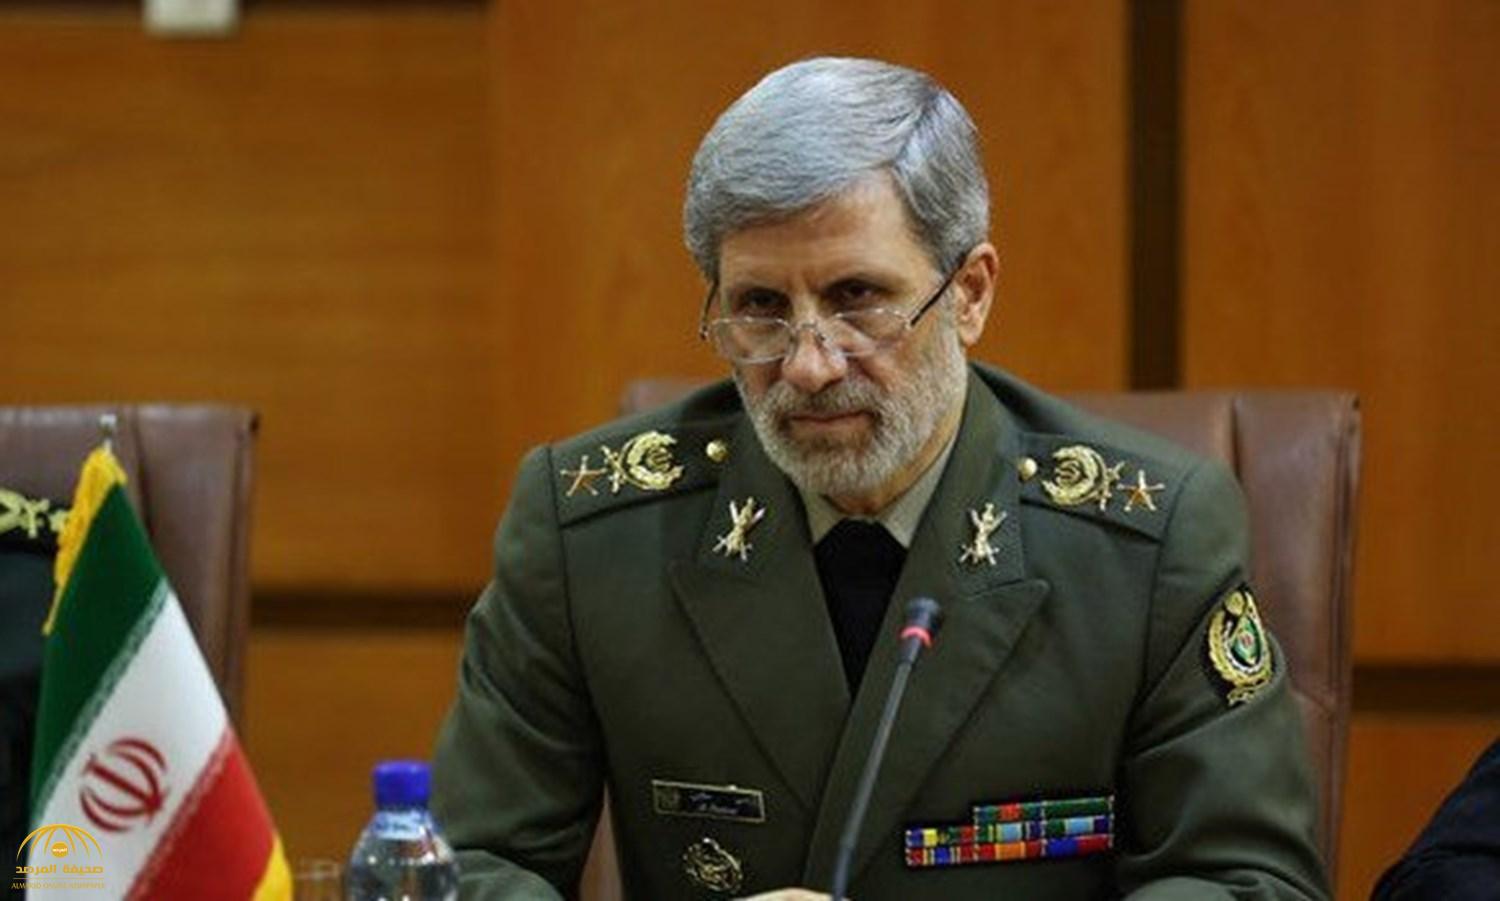 بعد وصول حاملة طائرات أمريكية إلى منطقة الخليج ... وزير الدفاع الإيراني يعلق على" الحالة الدفاعية" لبلاده